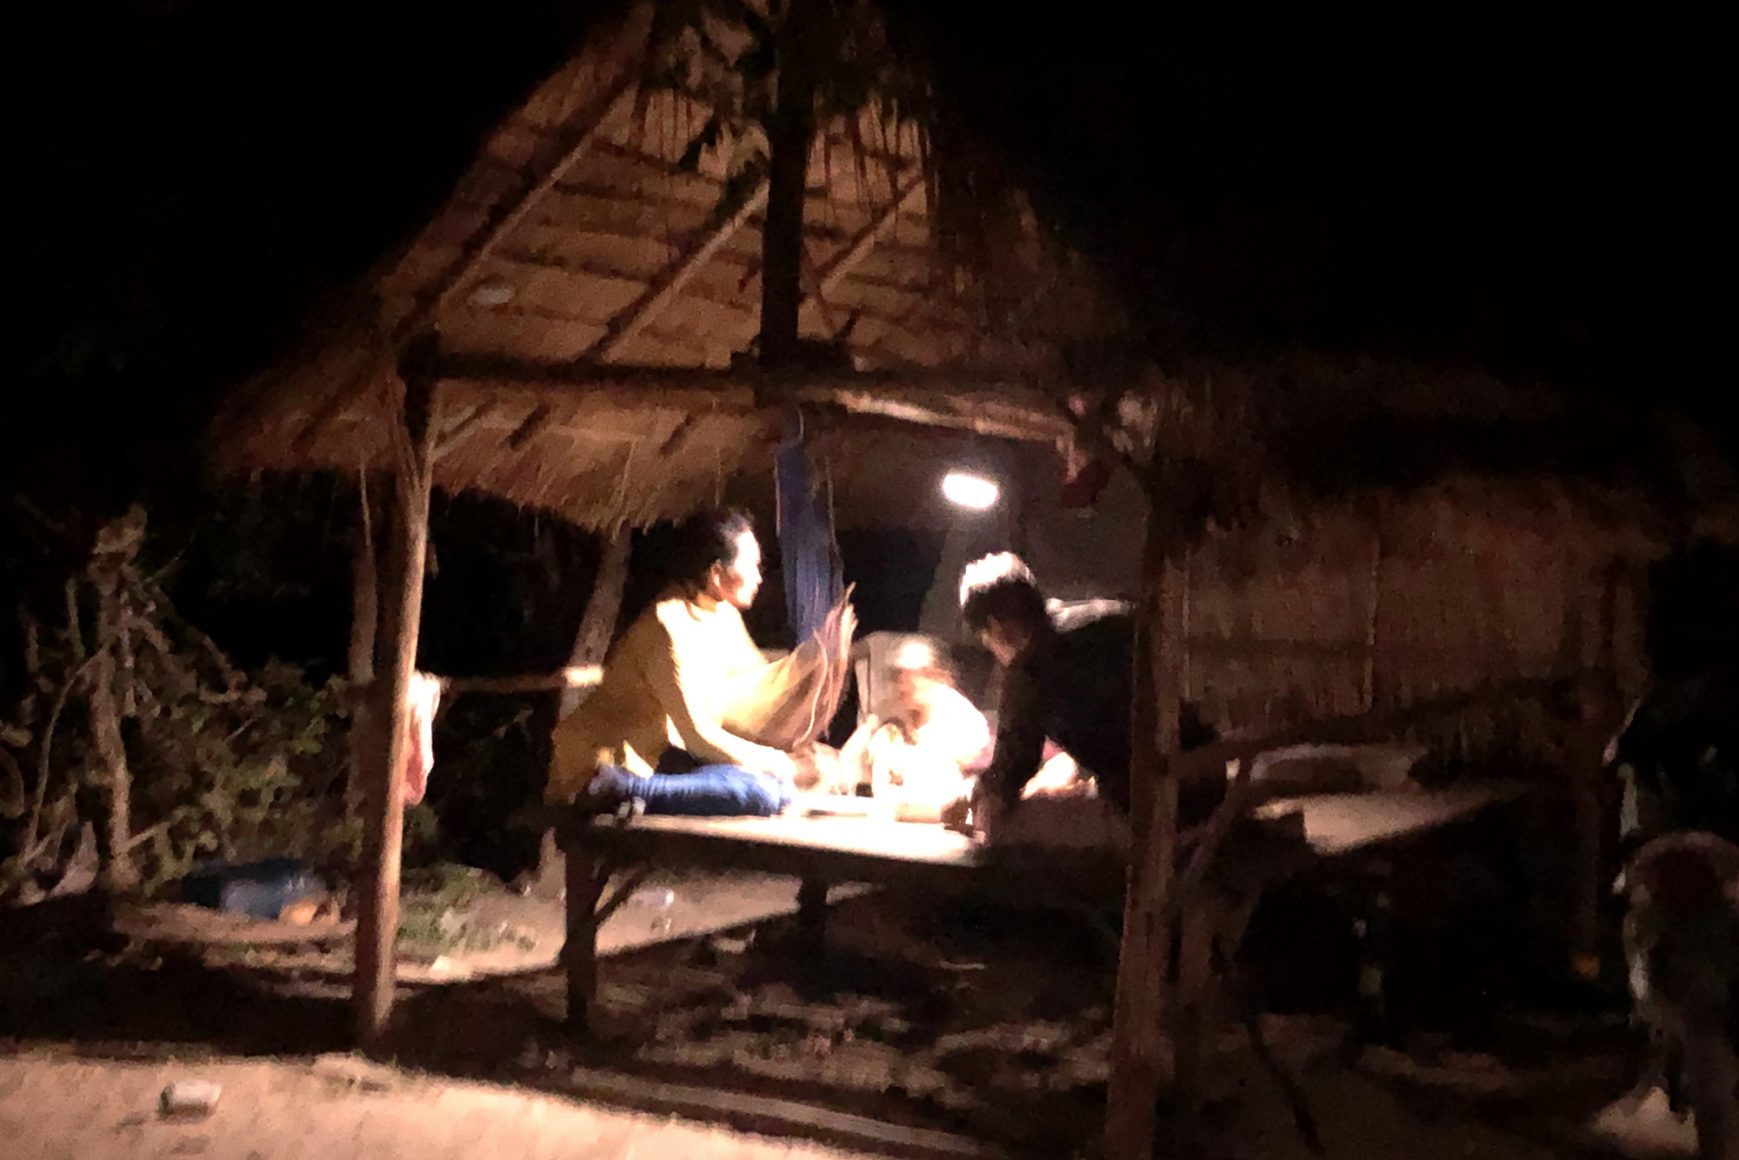 カンボジアの無電化地域にソーラーランタンを寄贈〜パナソニックHPで紹介されました